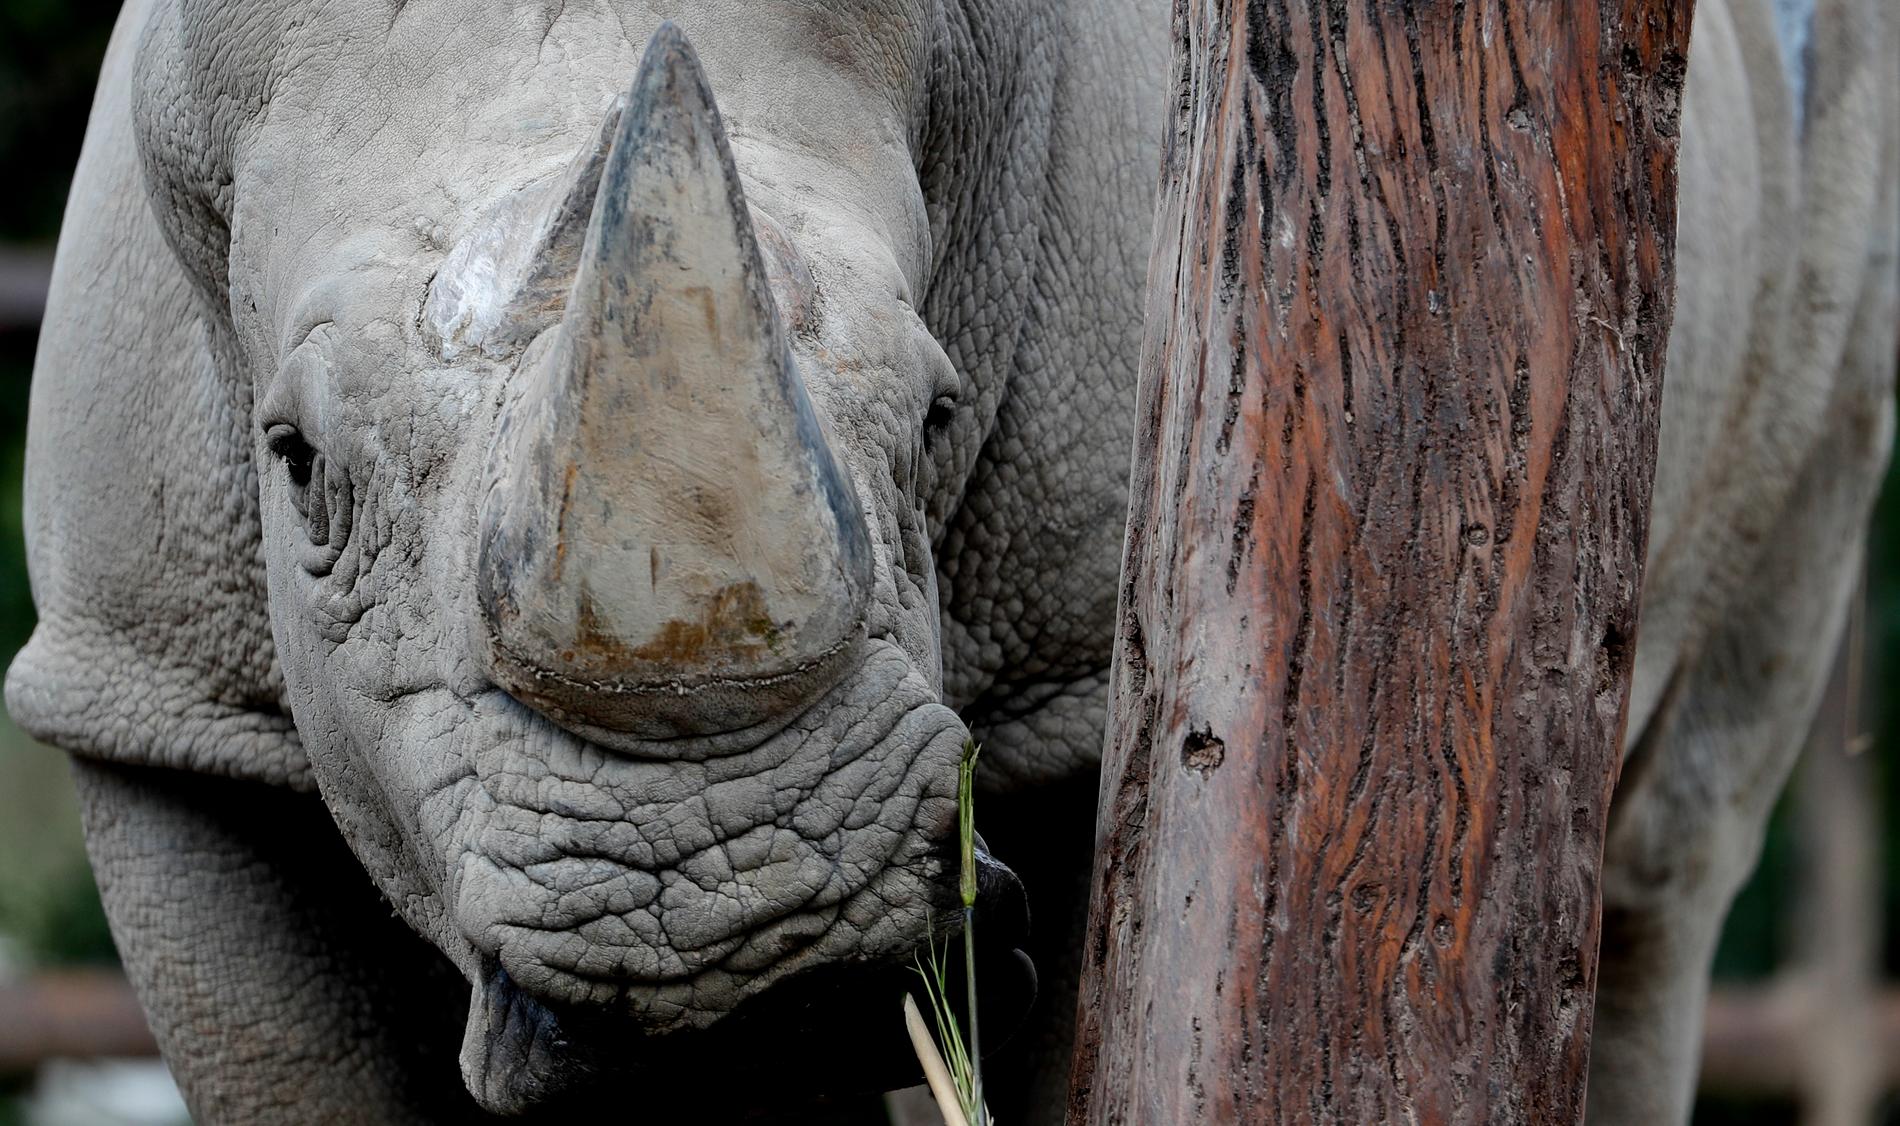 Forskare i Sydafrika vill skydda noshörningar mot tjuvjägare genom att injicera djurens horn med radioaktivt material. Arkivbild.